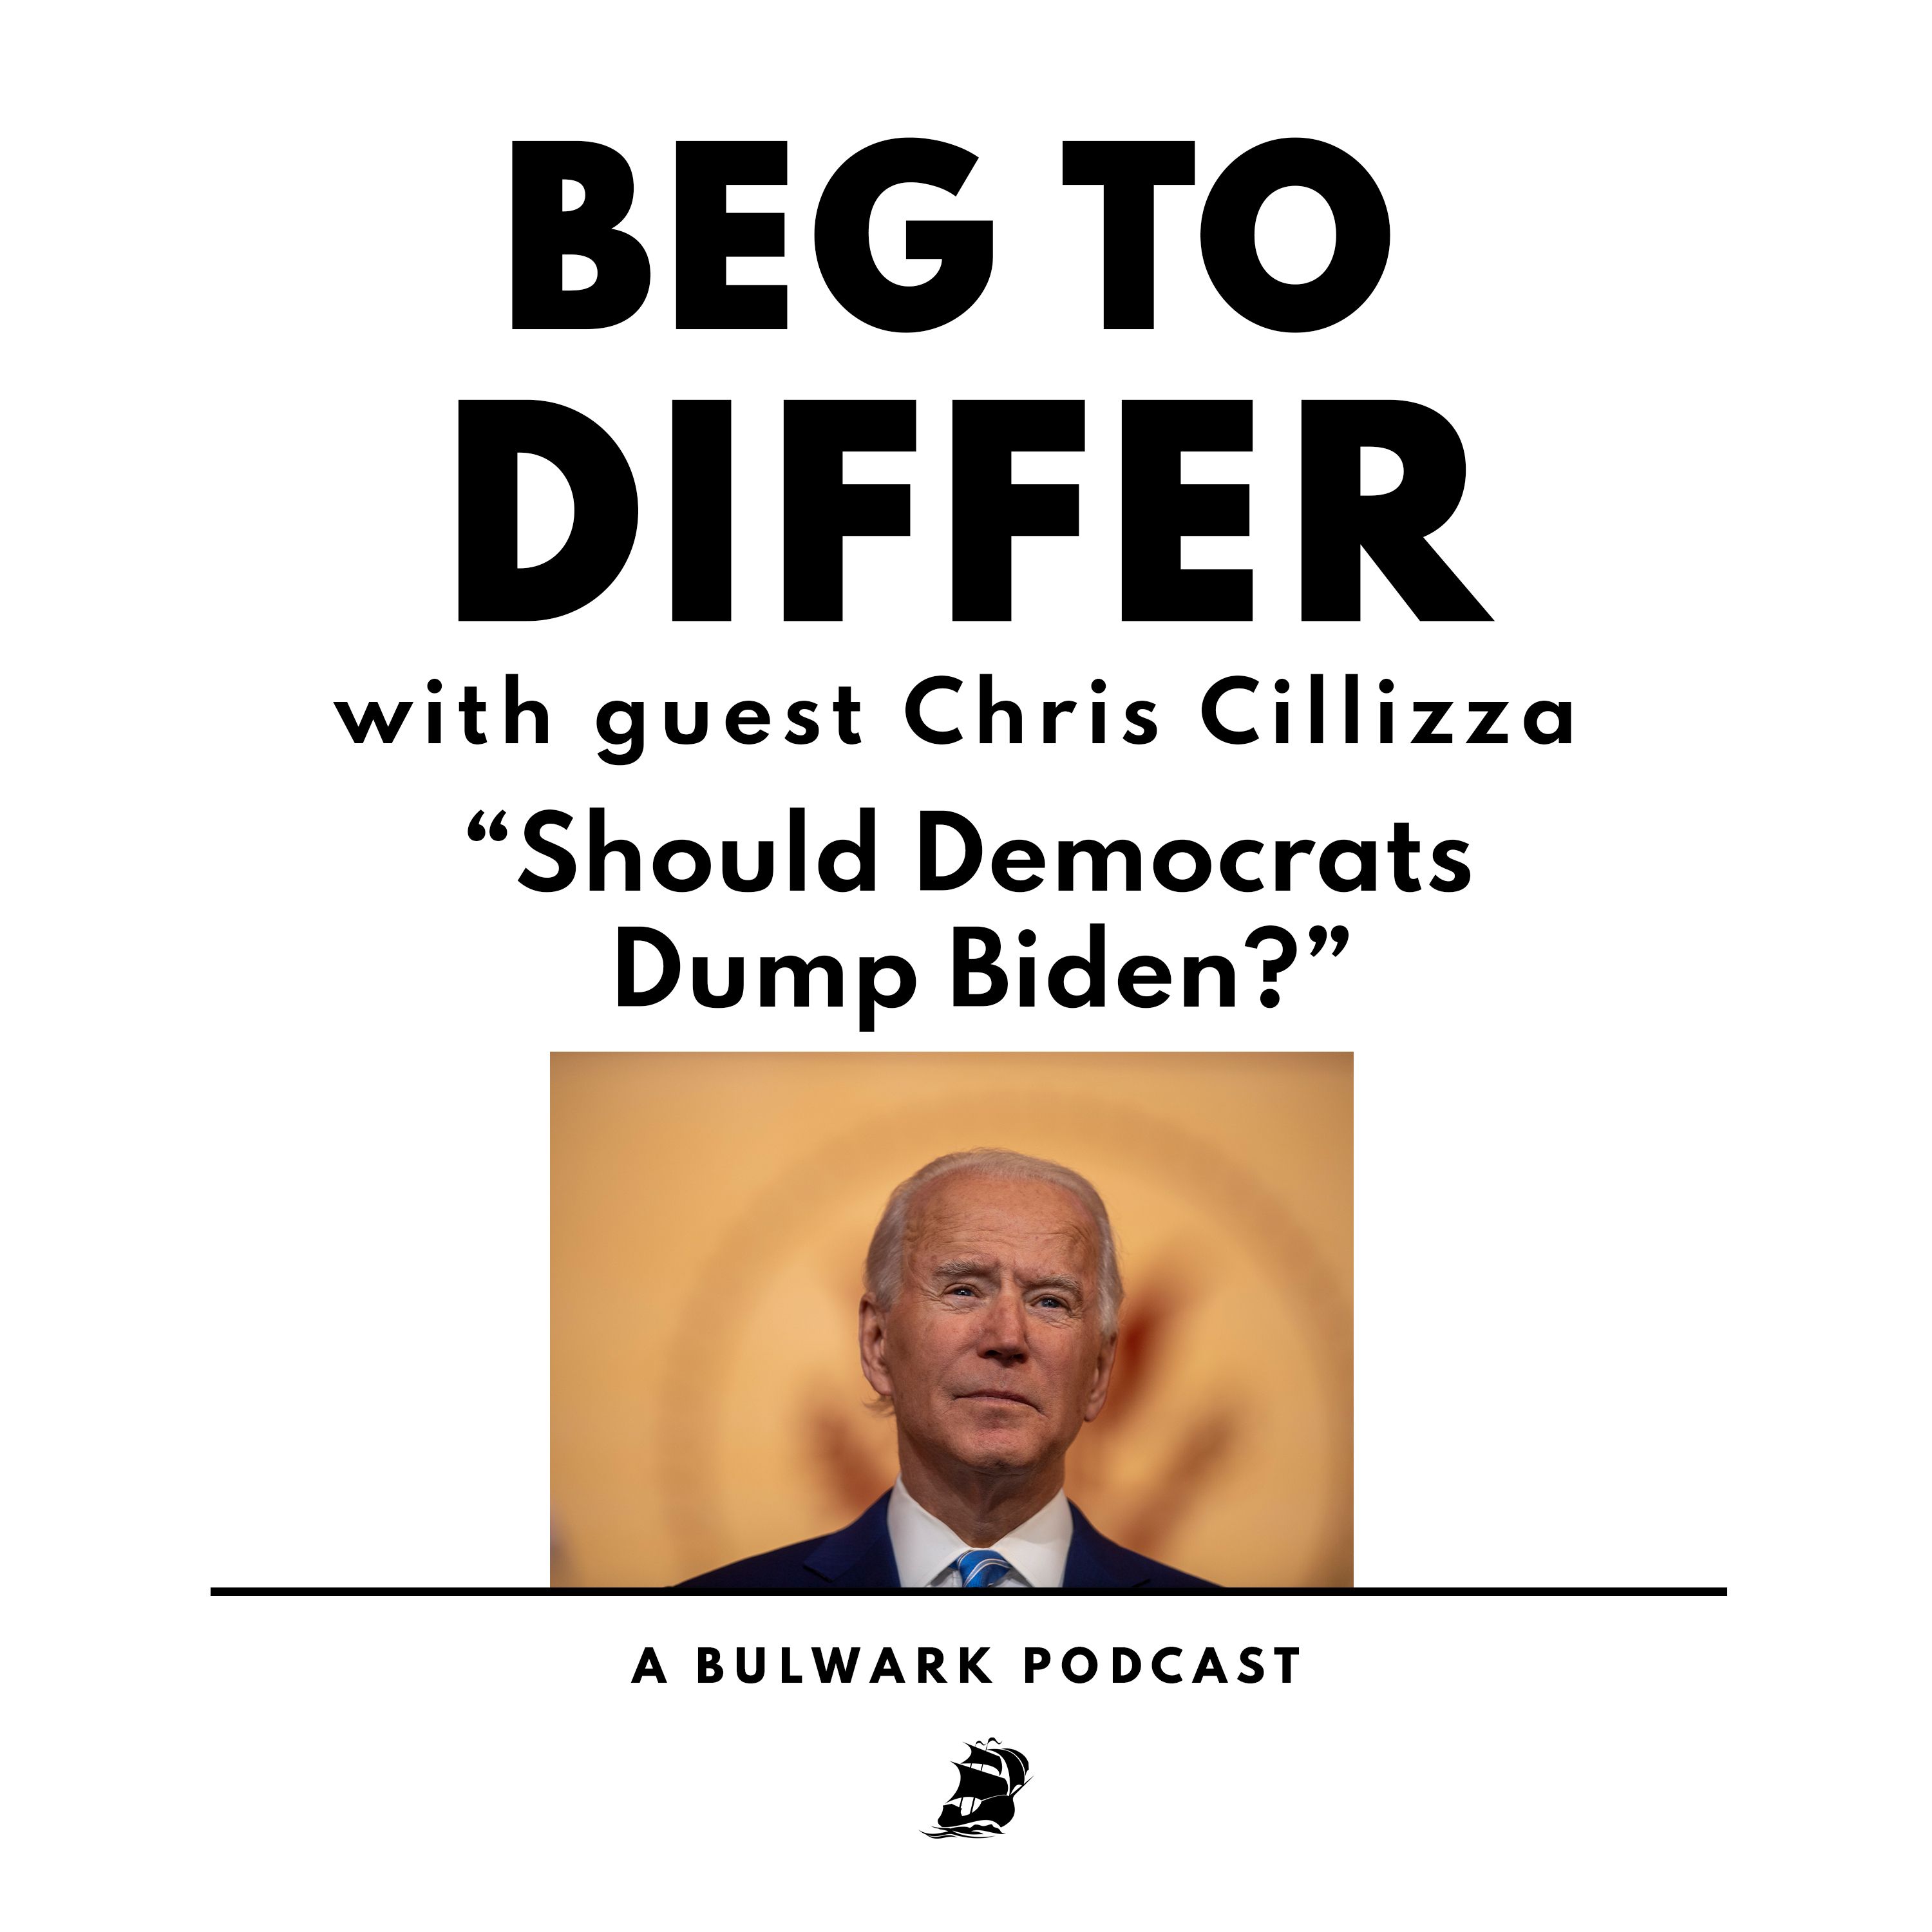 Should Democrats Dump Biden?